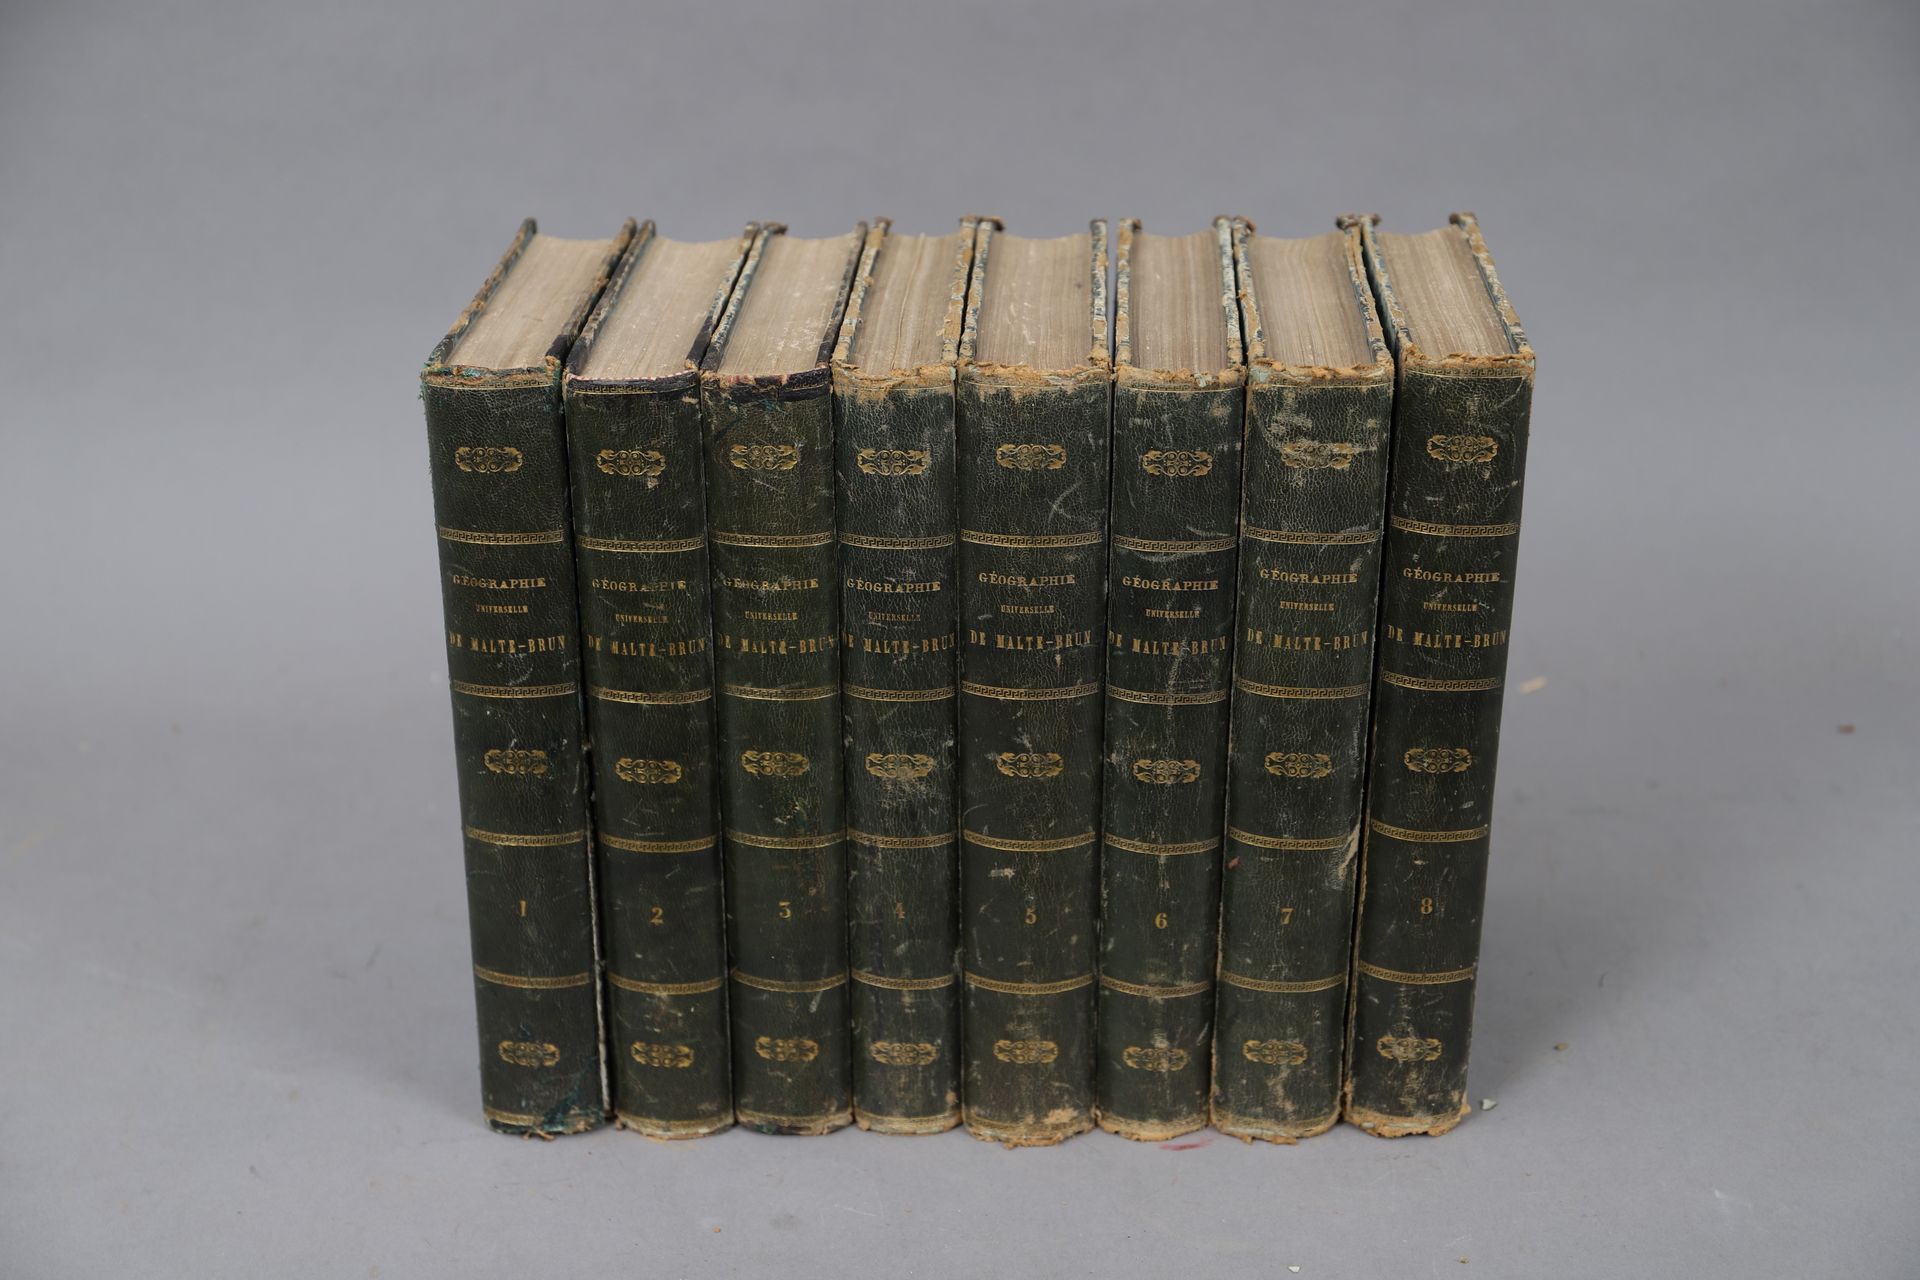 Null UNIVERSAL GEOGRAPHY von MALTE-BRUN

Paris 1864. 

8 gebundene Bände.